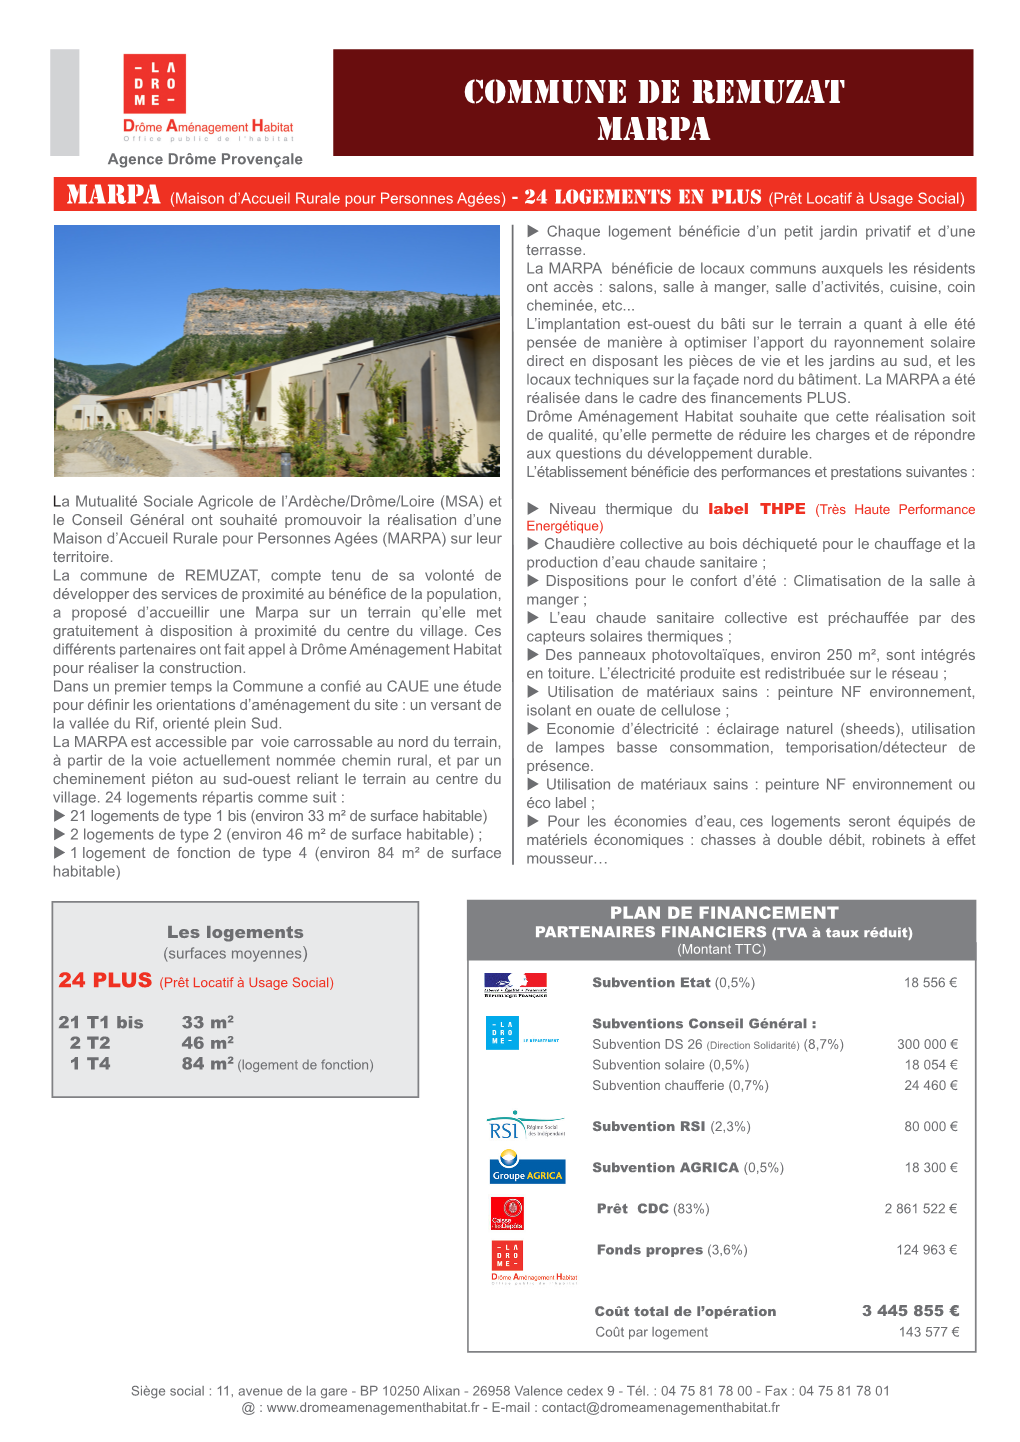 Commune De REMUZAT MARPA Agence Drôme Provençale